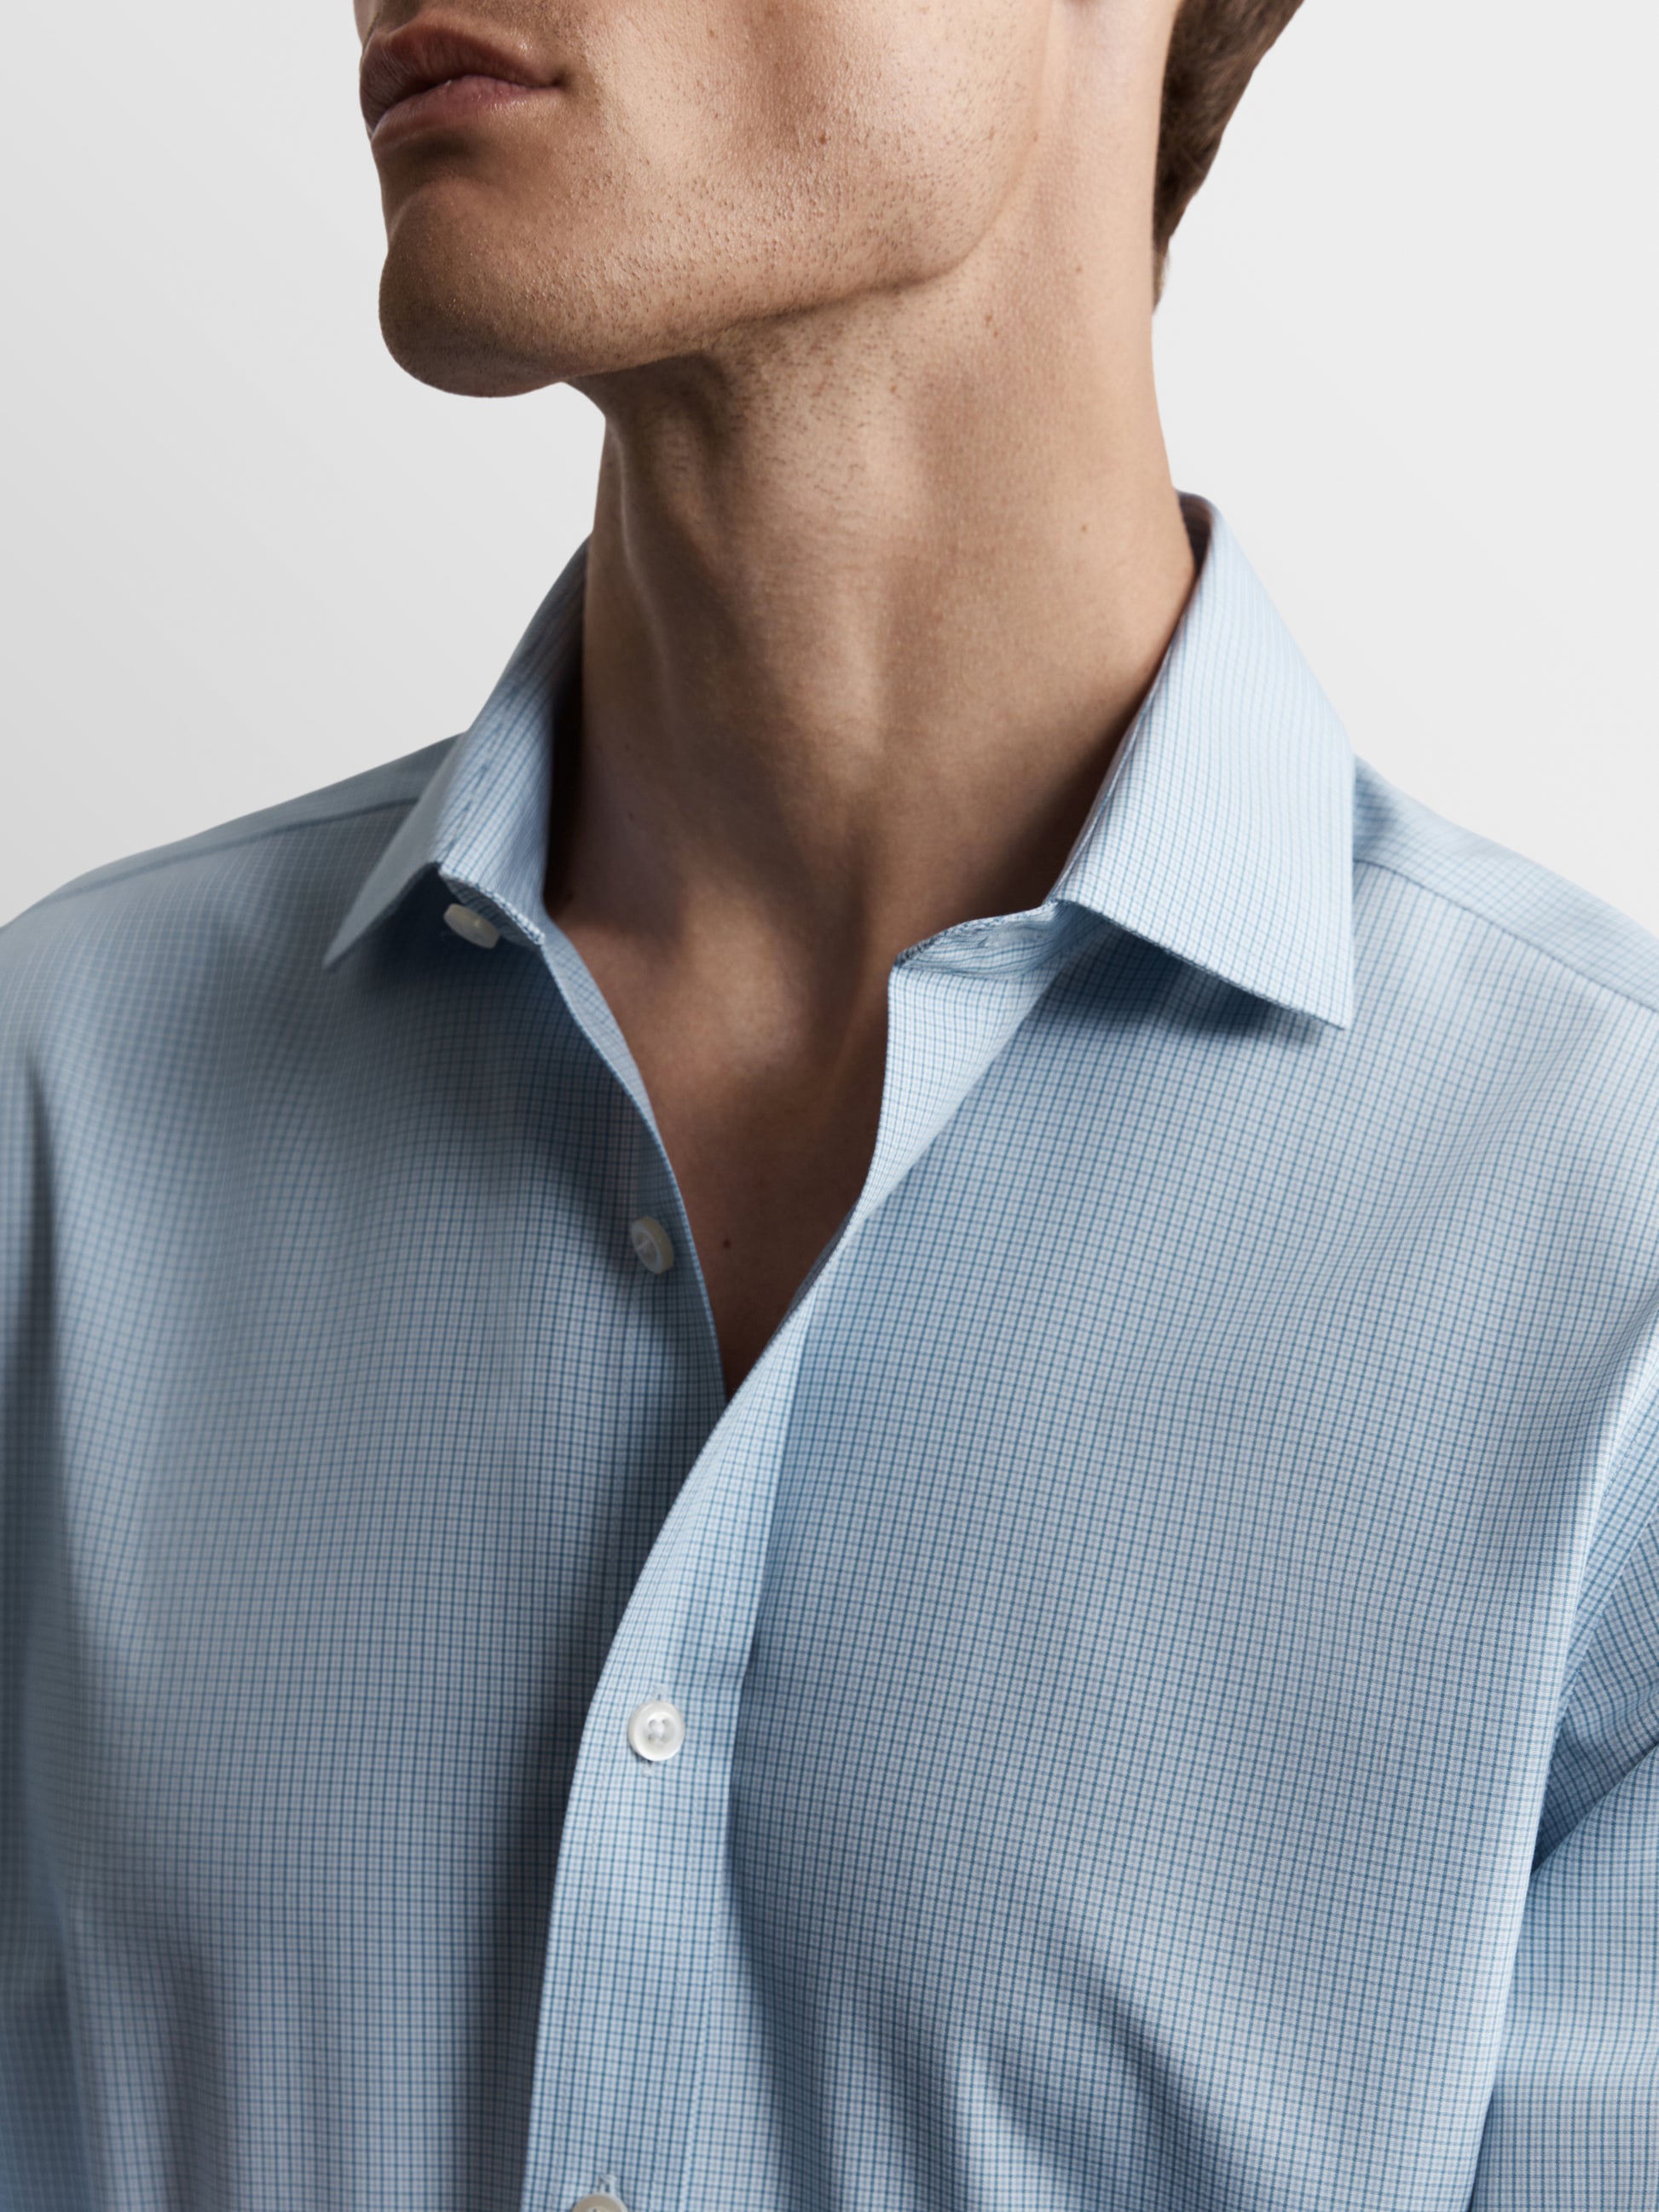 Image 2 of Non-Iron Blue Multi Micro Check Poplin Fitted Single Cuff Classic Collar Shirt